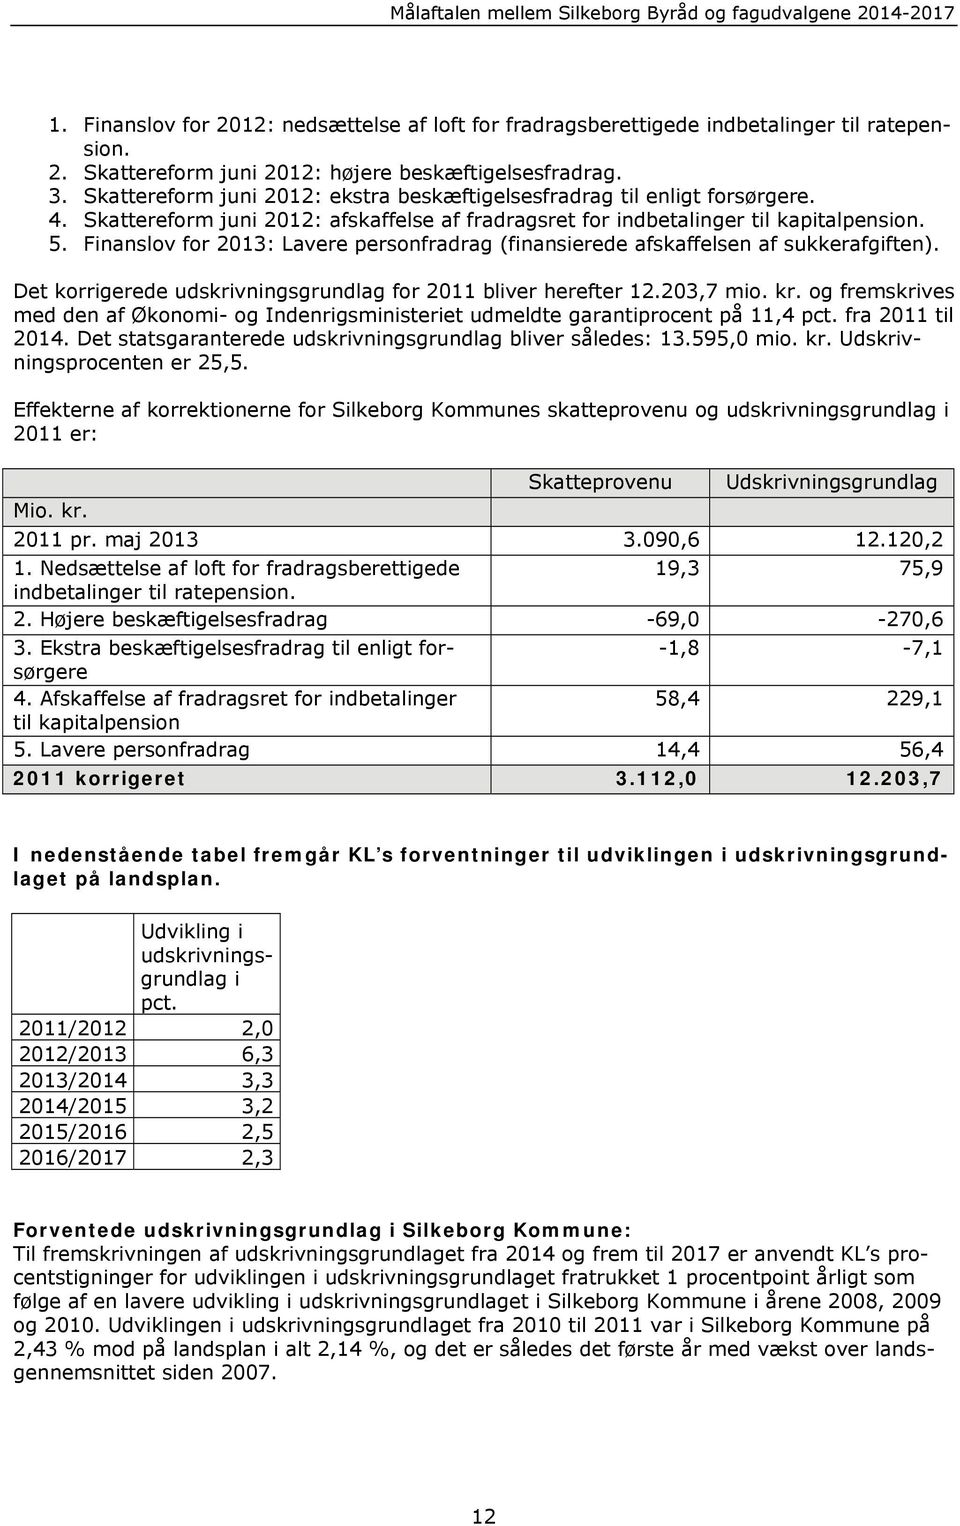 Finanslov for 2013: Lavere personfradrag (finansierede afskaffelsen af sukkerafgiften). Det korrigerede udskrivningsgrundlag for 2011 bliver herefter 12.203,7 mio. kr.